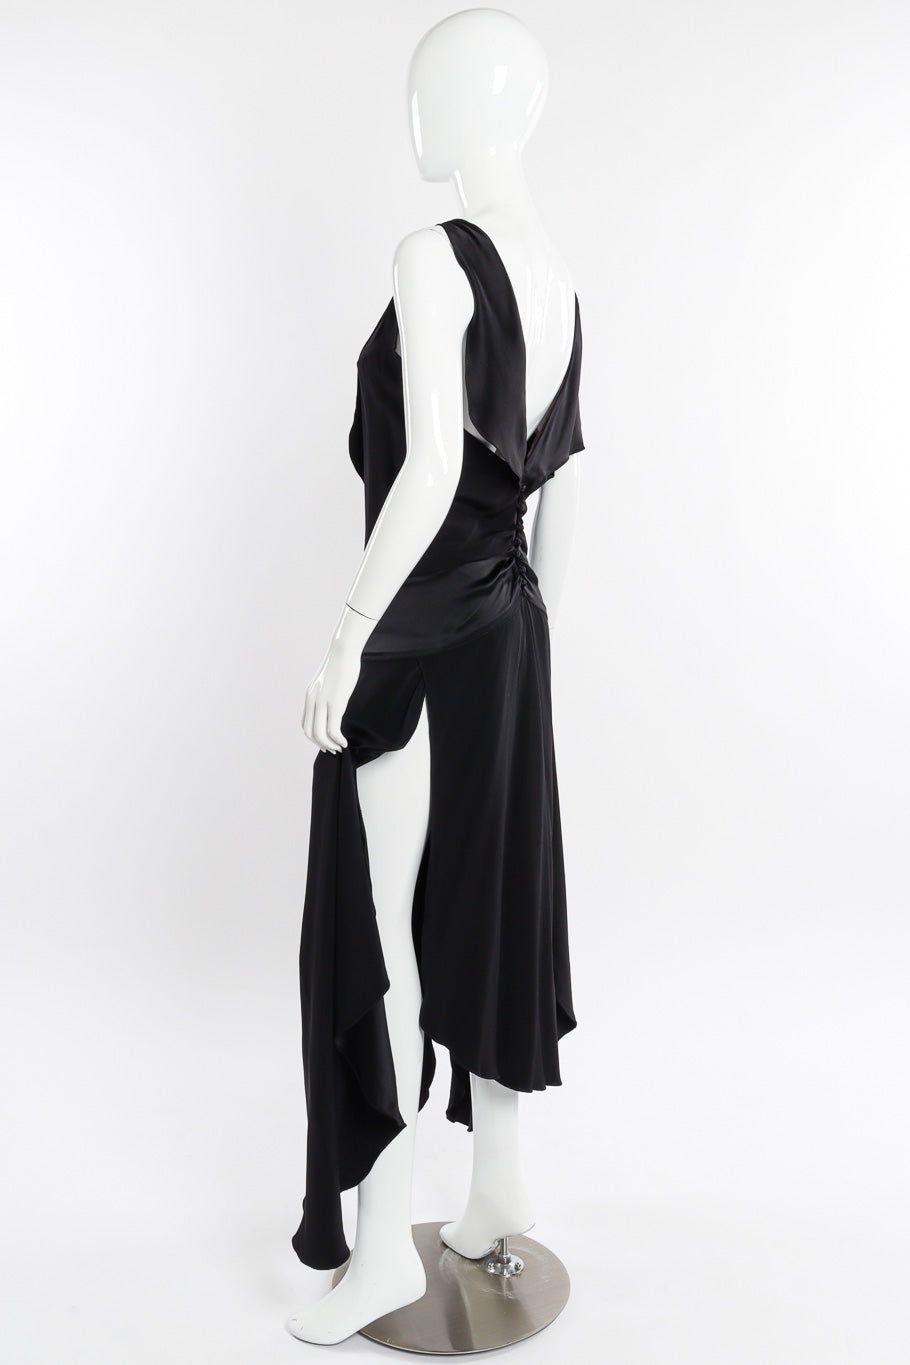 Flutter dress by Eavis & Brown on mannequin side @recessla